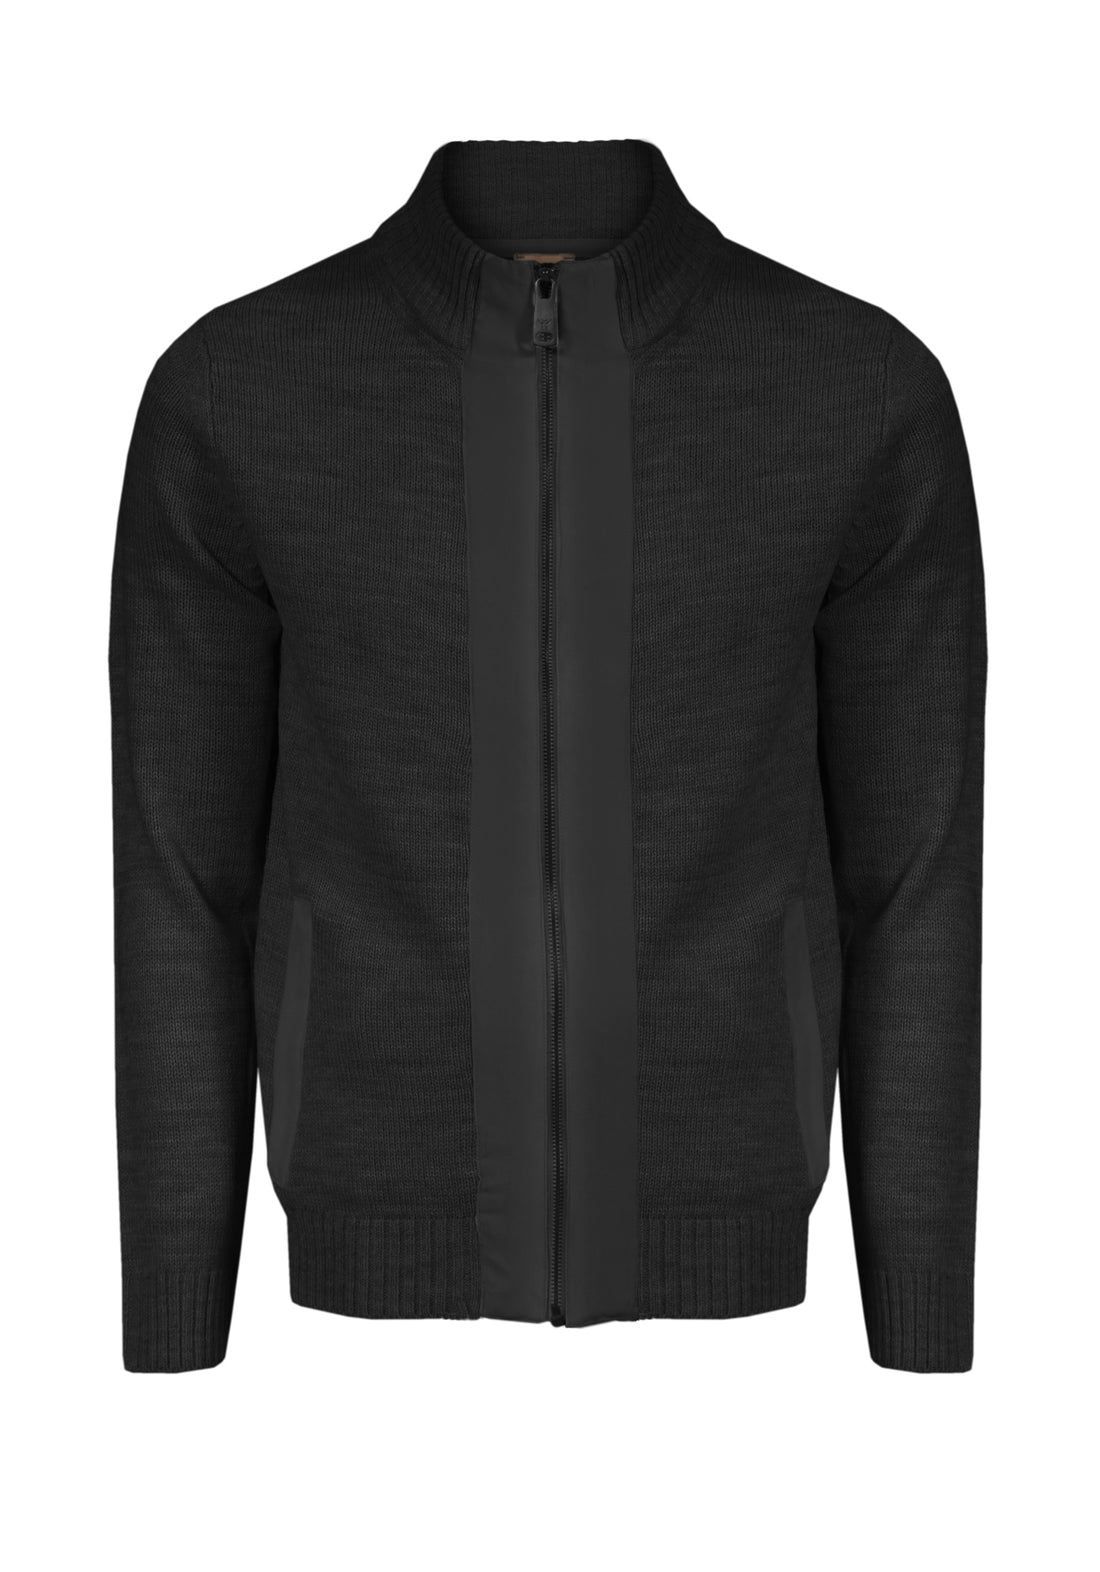 Contrast Suede Cardigan Sweater - Black